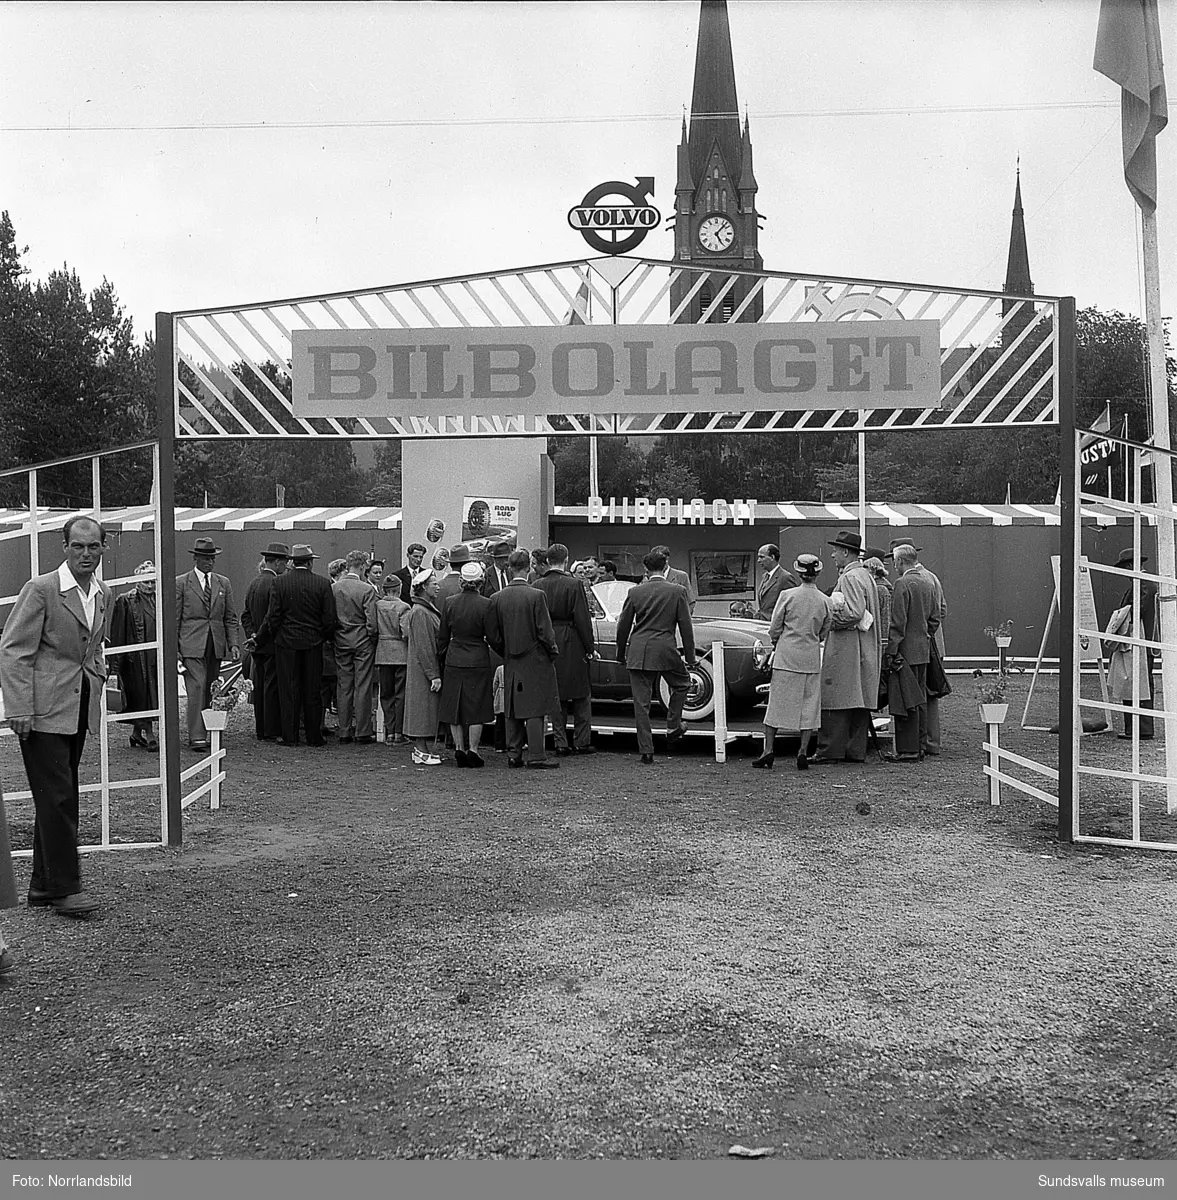 Bilbolagets monter vid Sundsvallsmässan 1954, på Läroverksplanen. I centrum för allas intresse står nyheten Volvo Sport, med glasfiberkaross.